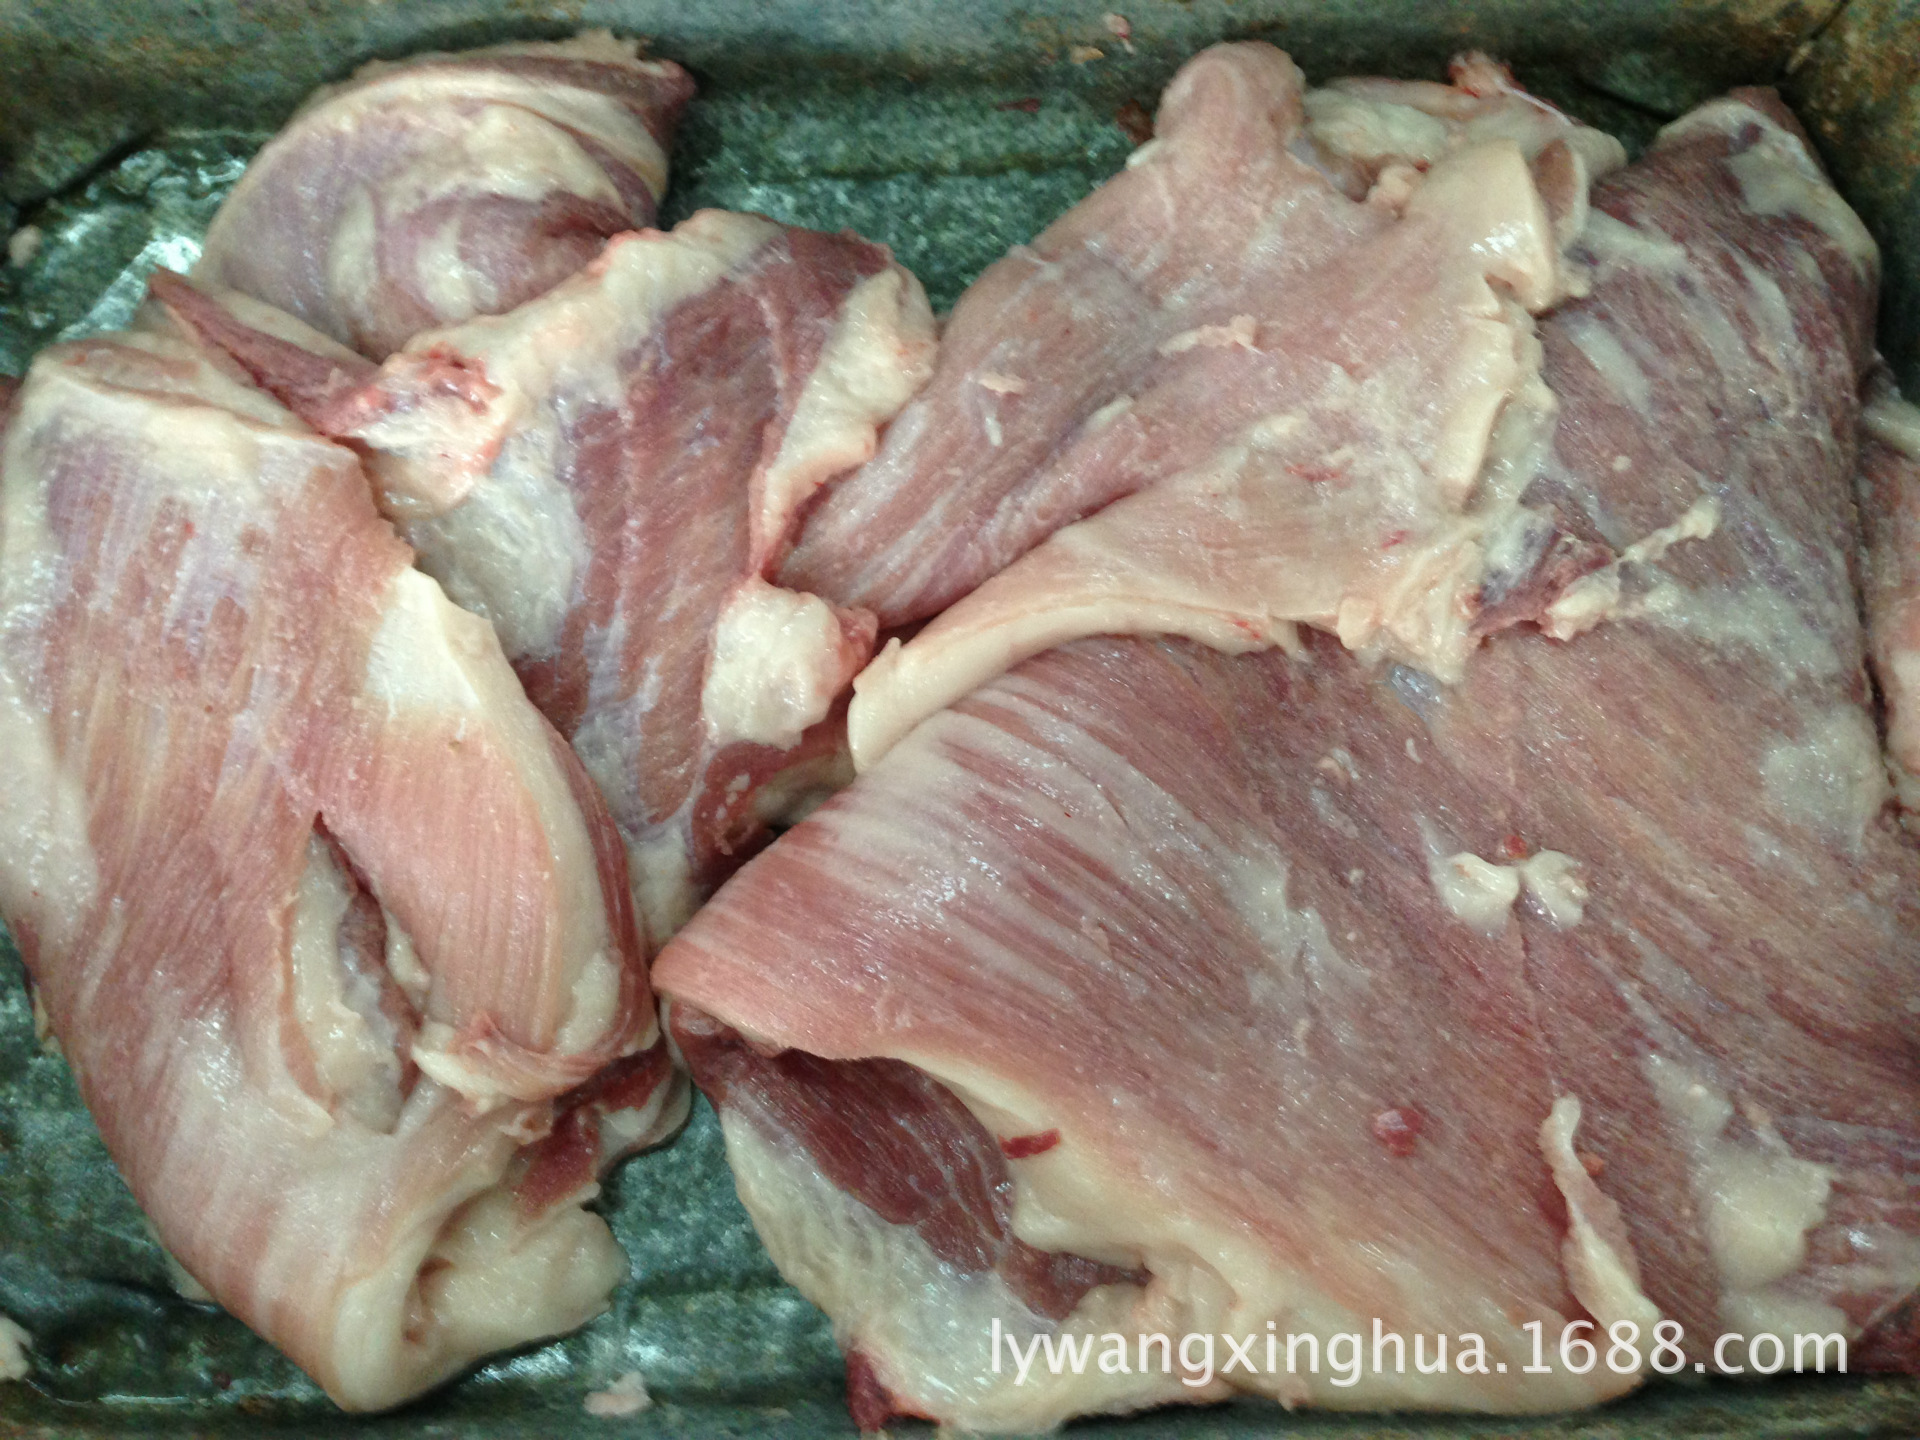 【供应冷冻猪肉,猪肉,母猪肉】天津供应冷冻猪肉,猪肉